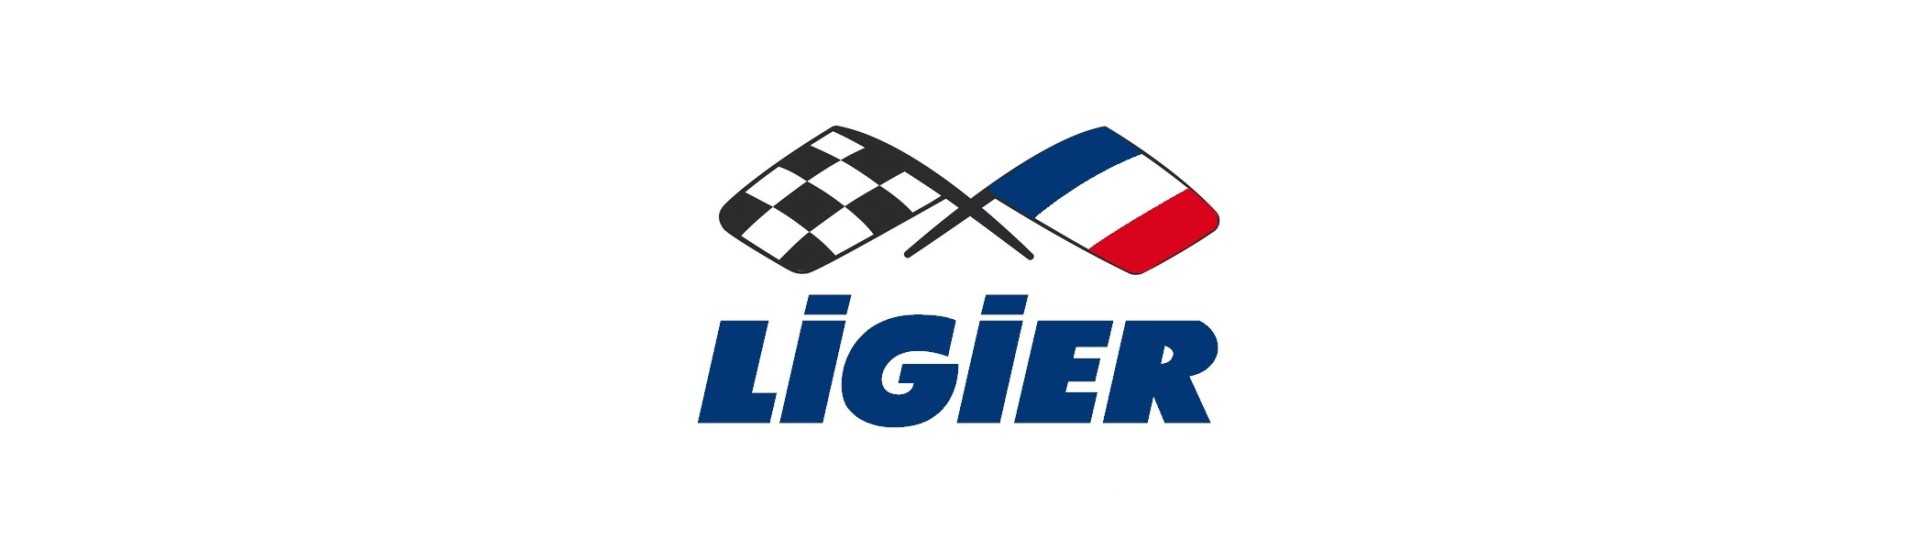 Fyr till bästa pris för bil utan tillstånd Ligier